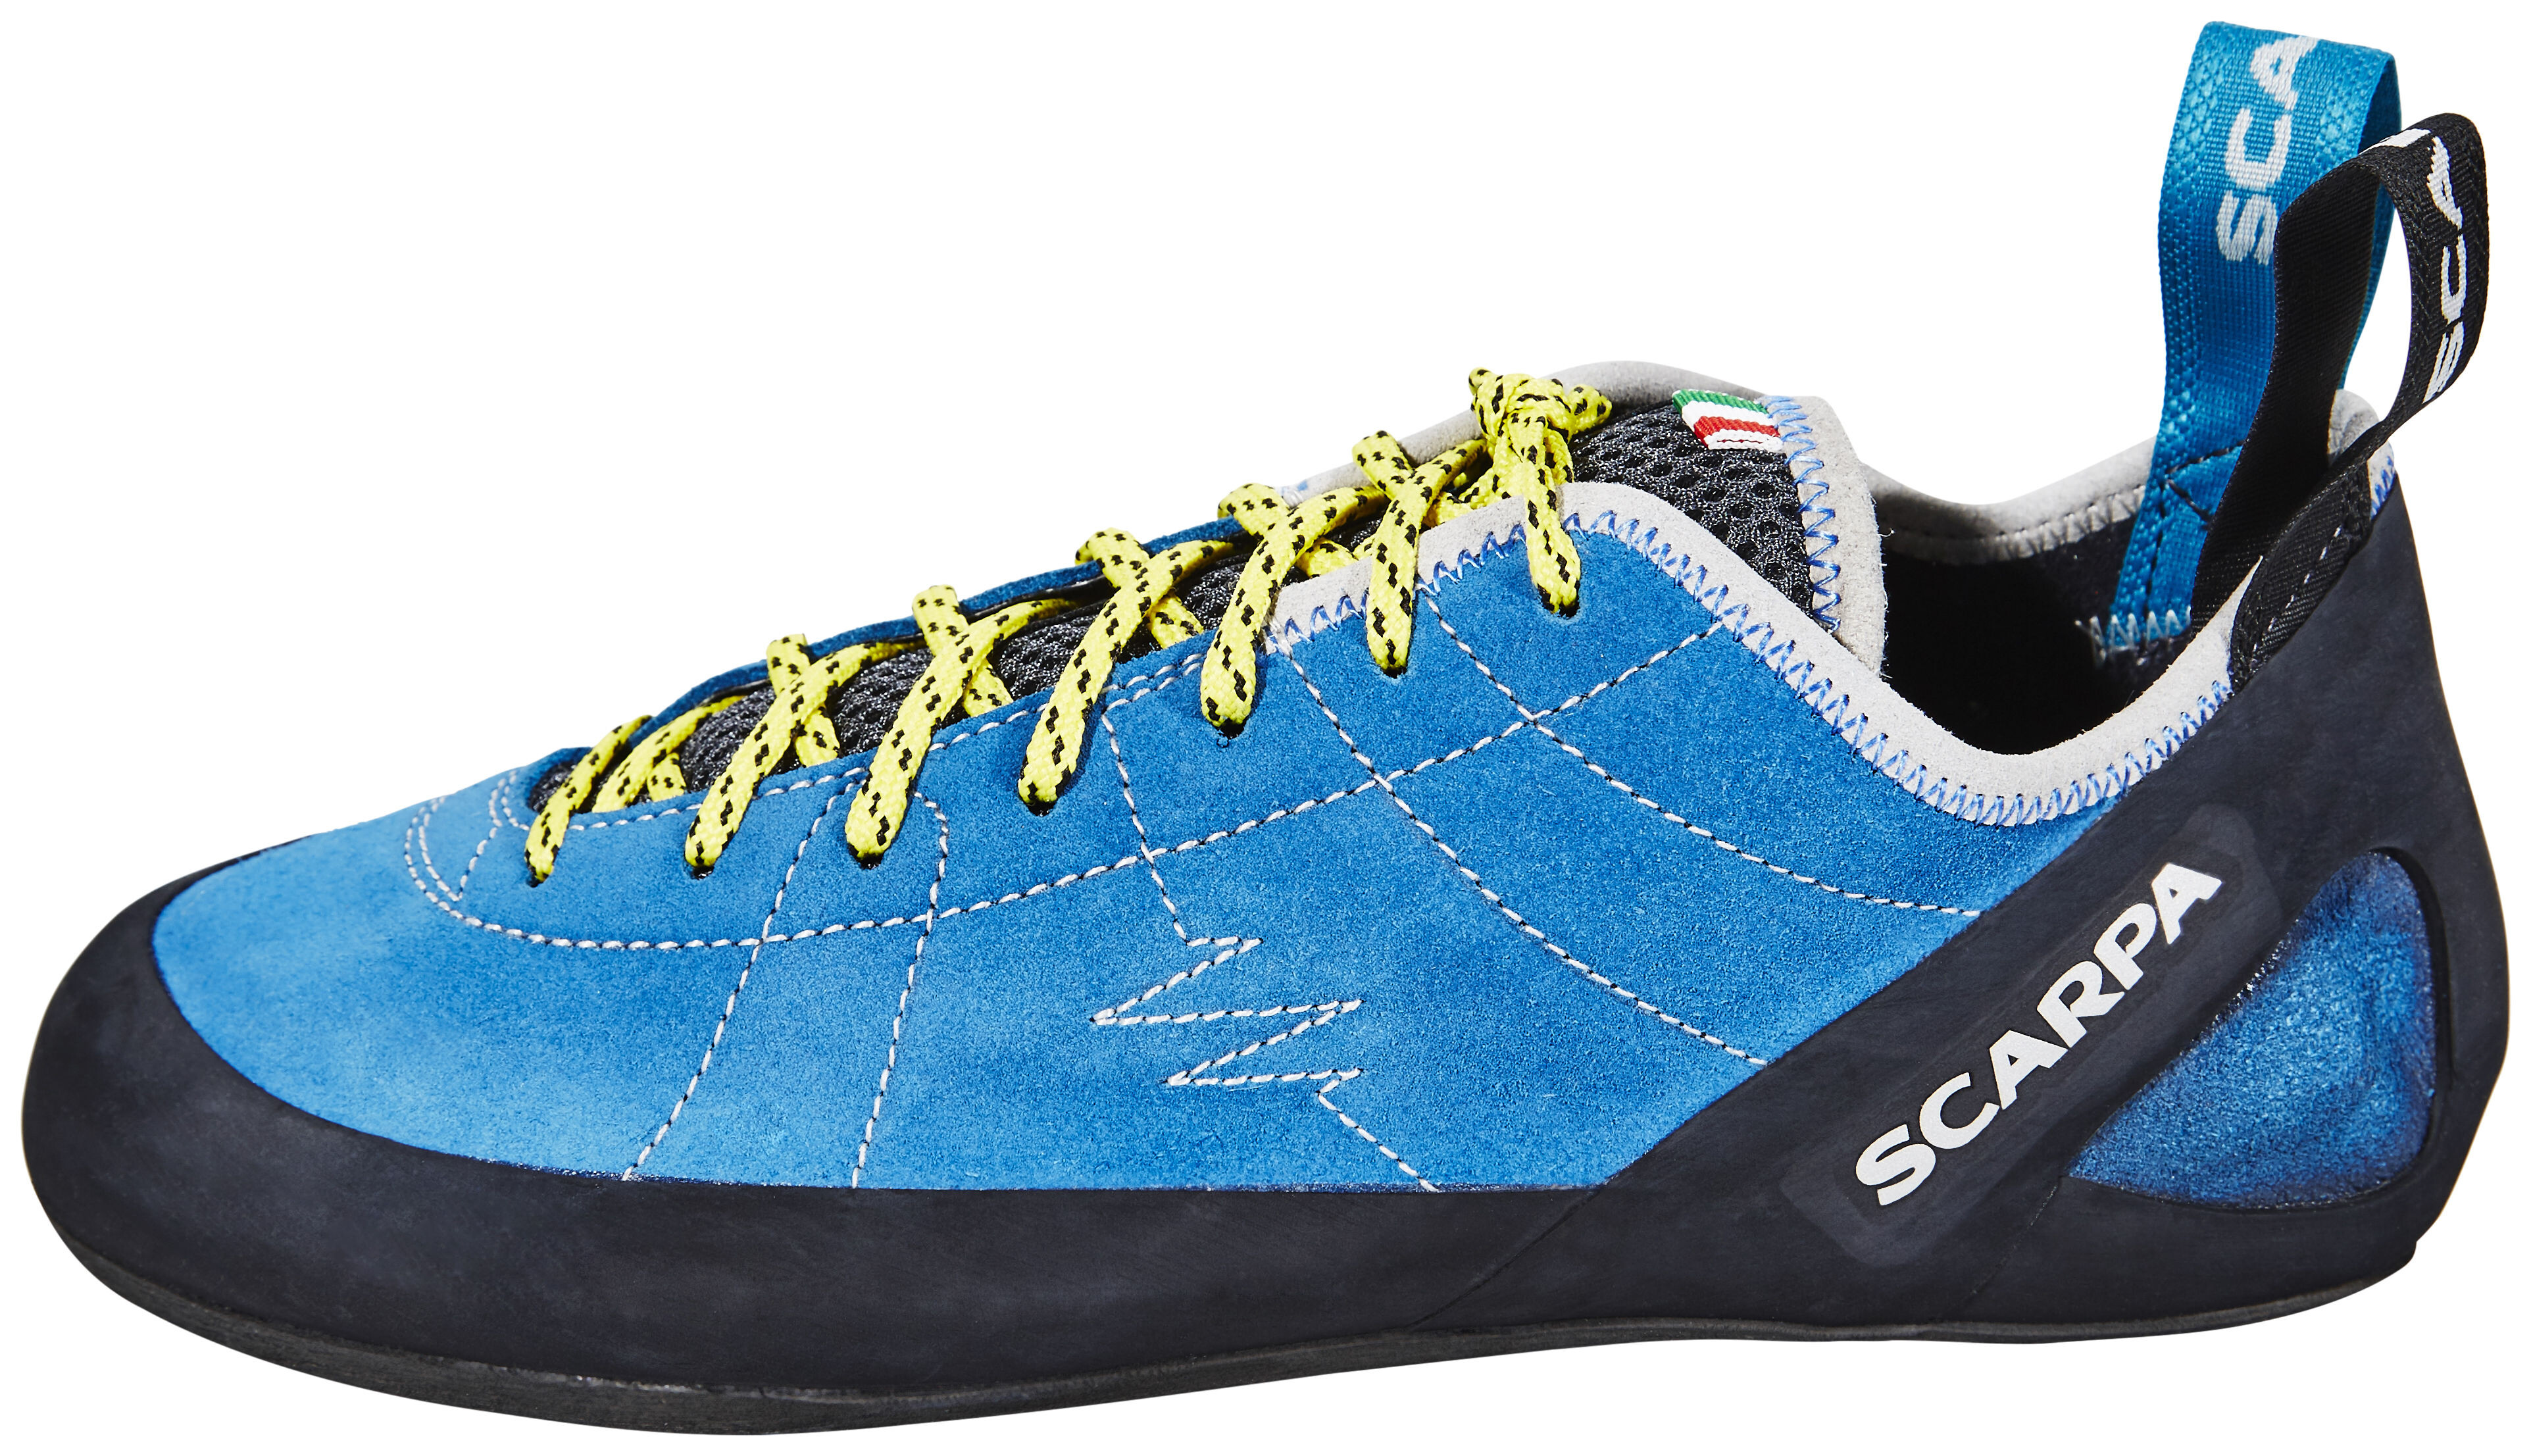 Scarpa Helix Scarpe da arrampicata Uomo, hyper blue su Addnature